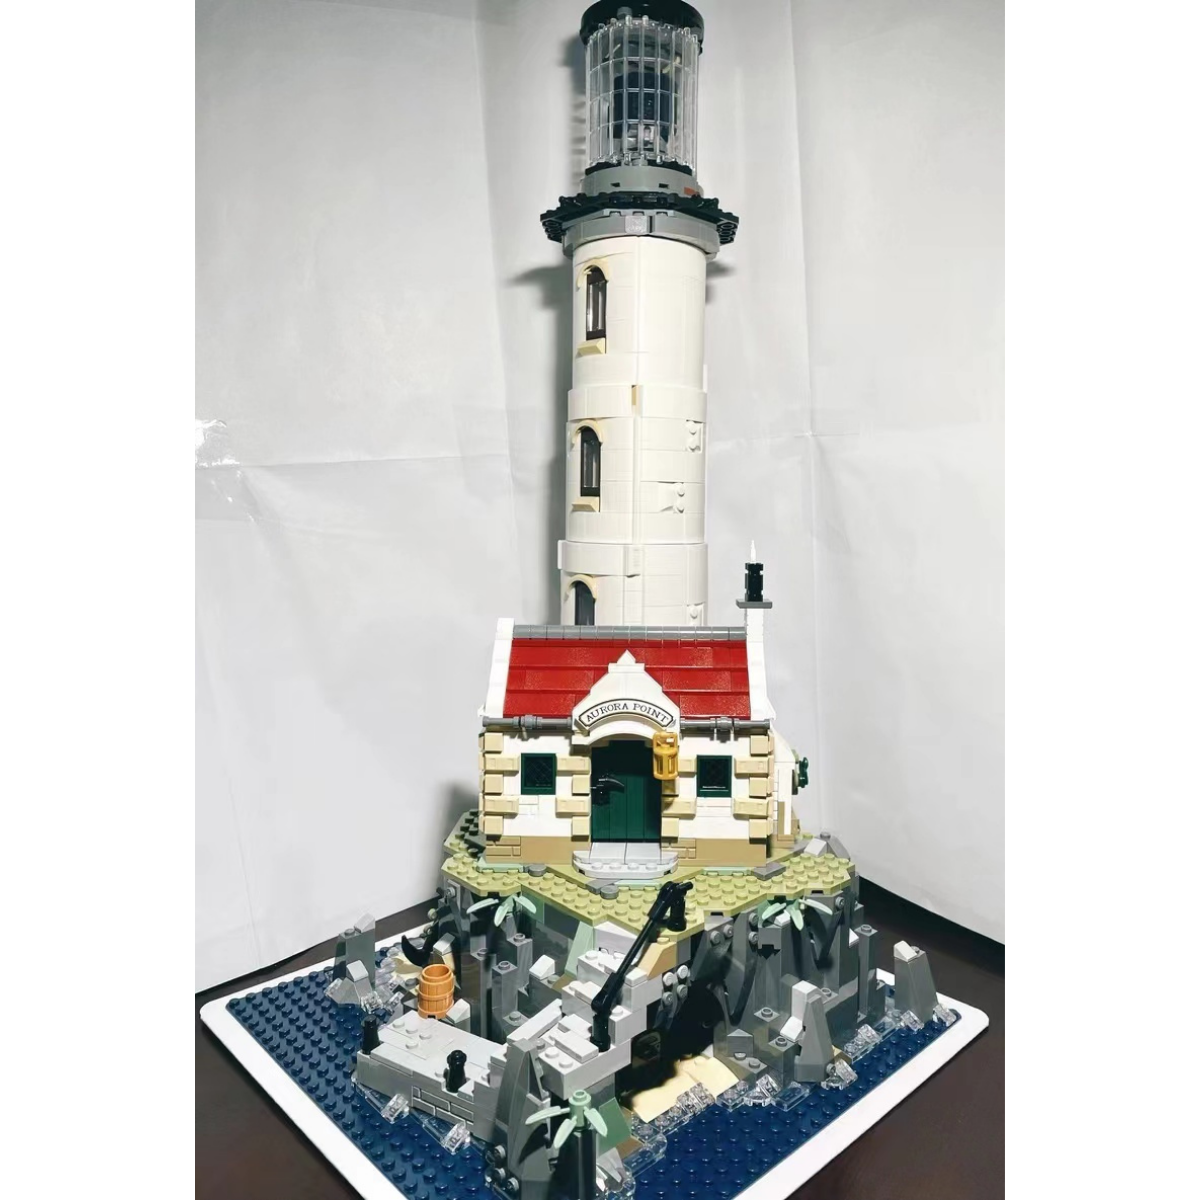 MOC bricks set for 21335 Motorized Lighthouse